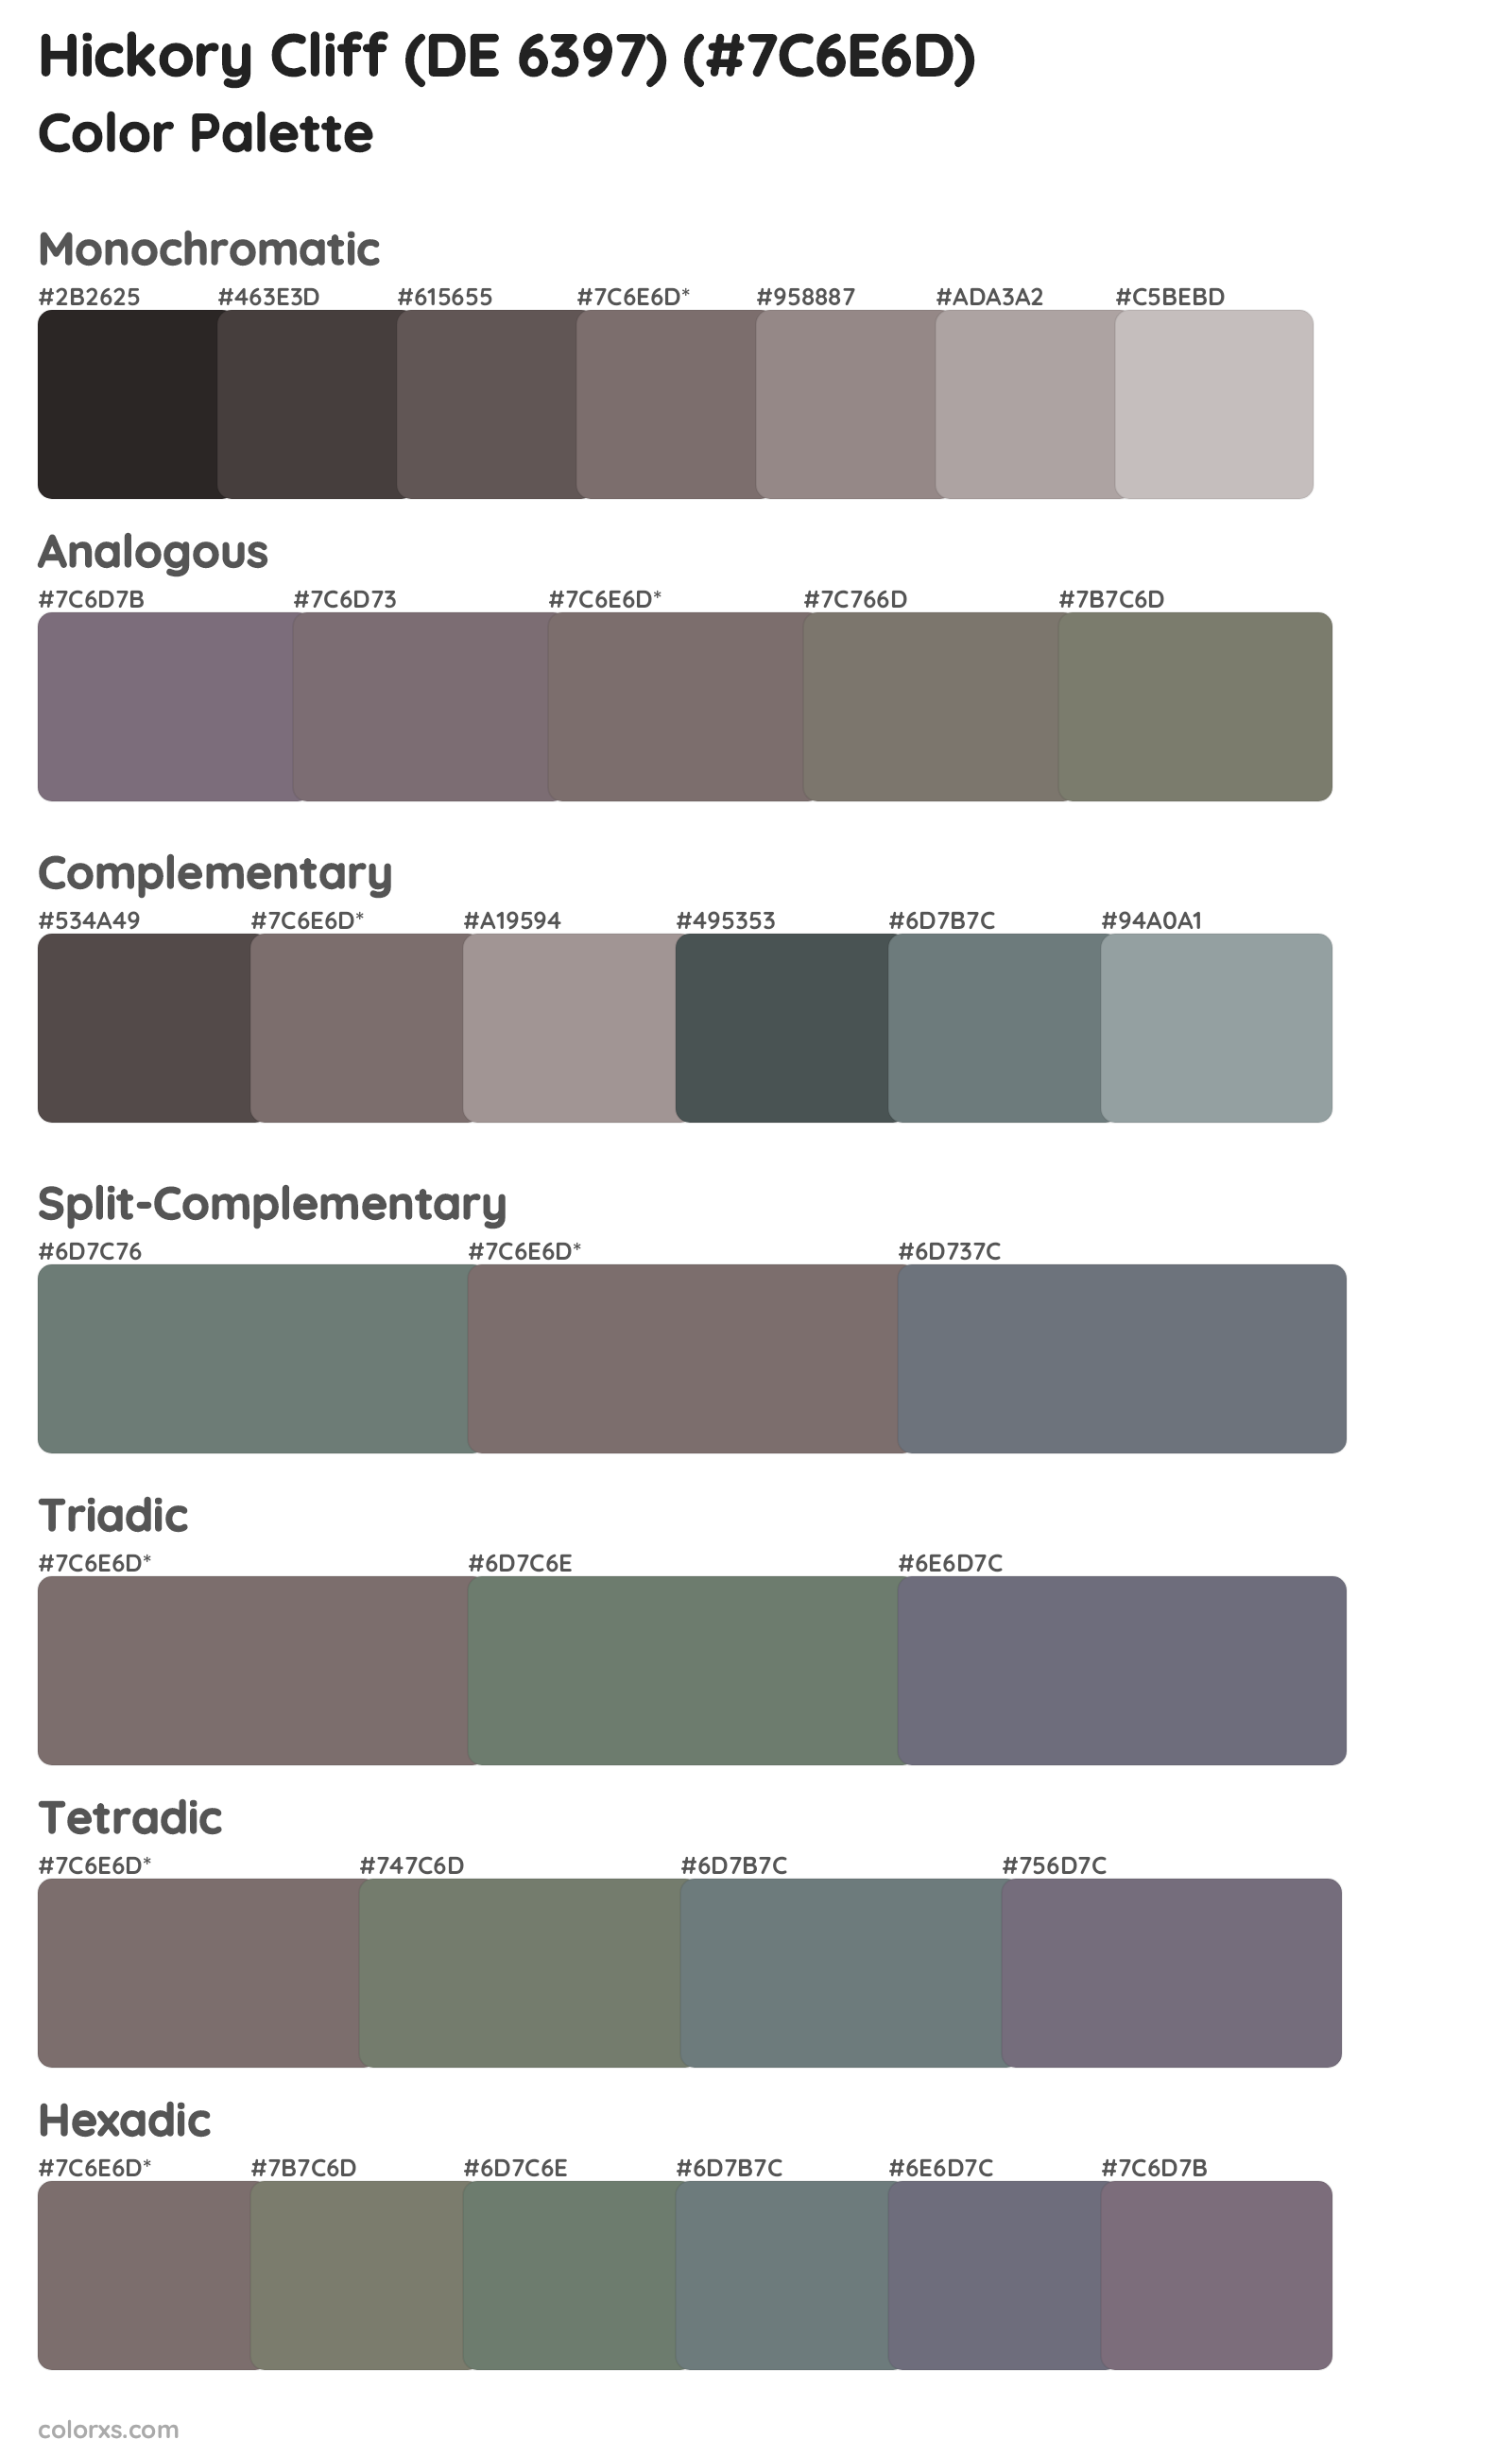 Hickory Cliff (DE 6397) Color Scheme Palettes